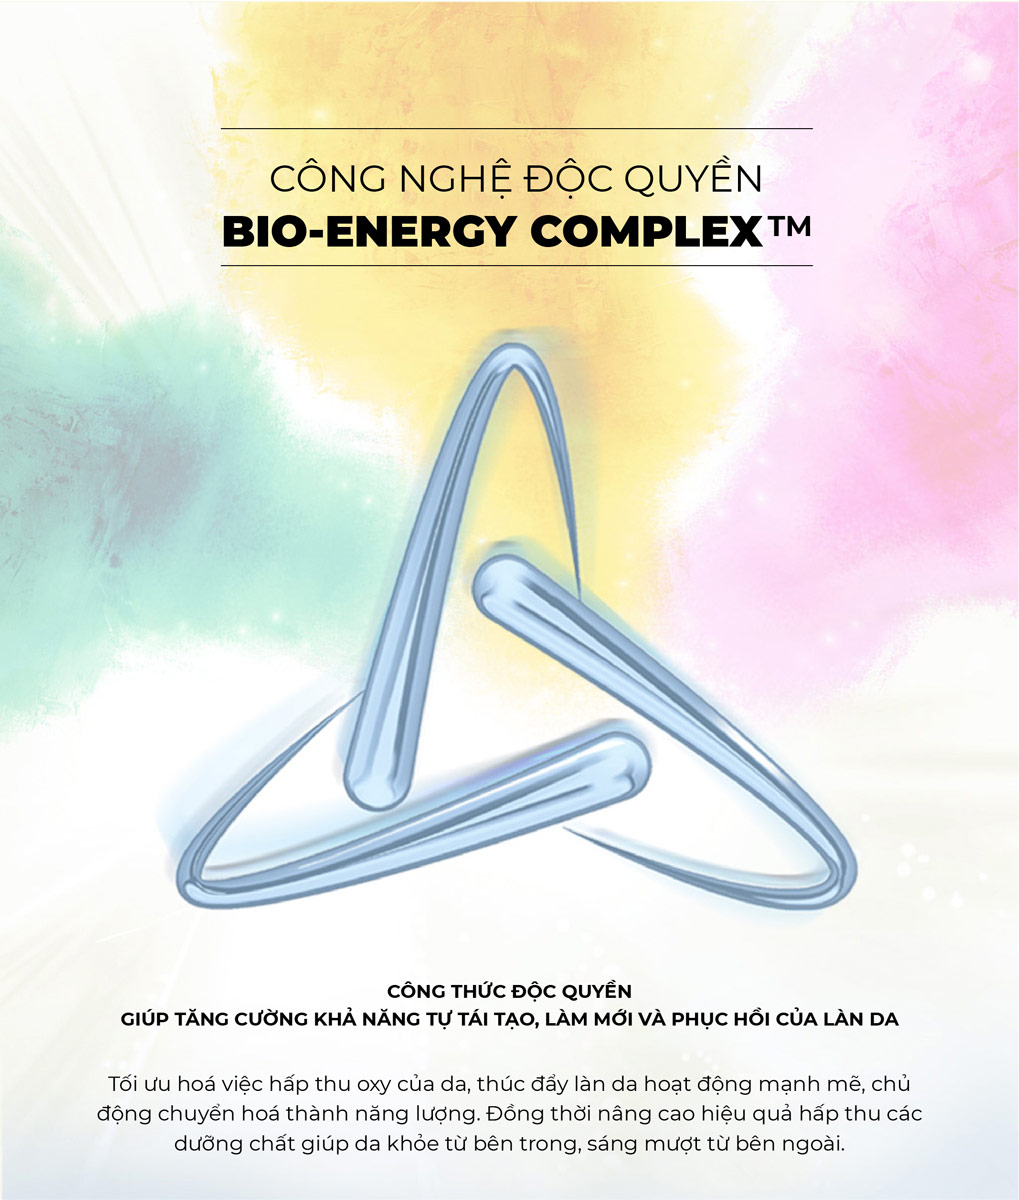 Mặt Nạ Bio-Essence Bio-Treasure Intensive Glow Ampoule Mask ứng dụng công nghệ độc quyền Bio-Energy Complex giúp tăng cường khả năng tự tái tạo, phục hồi và làm mới của làn da.